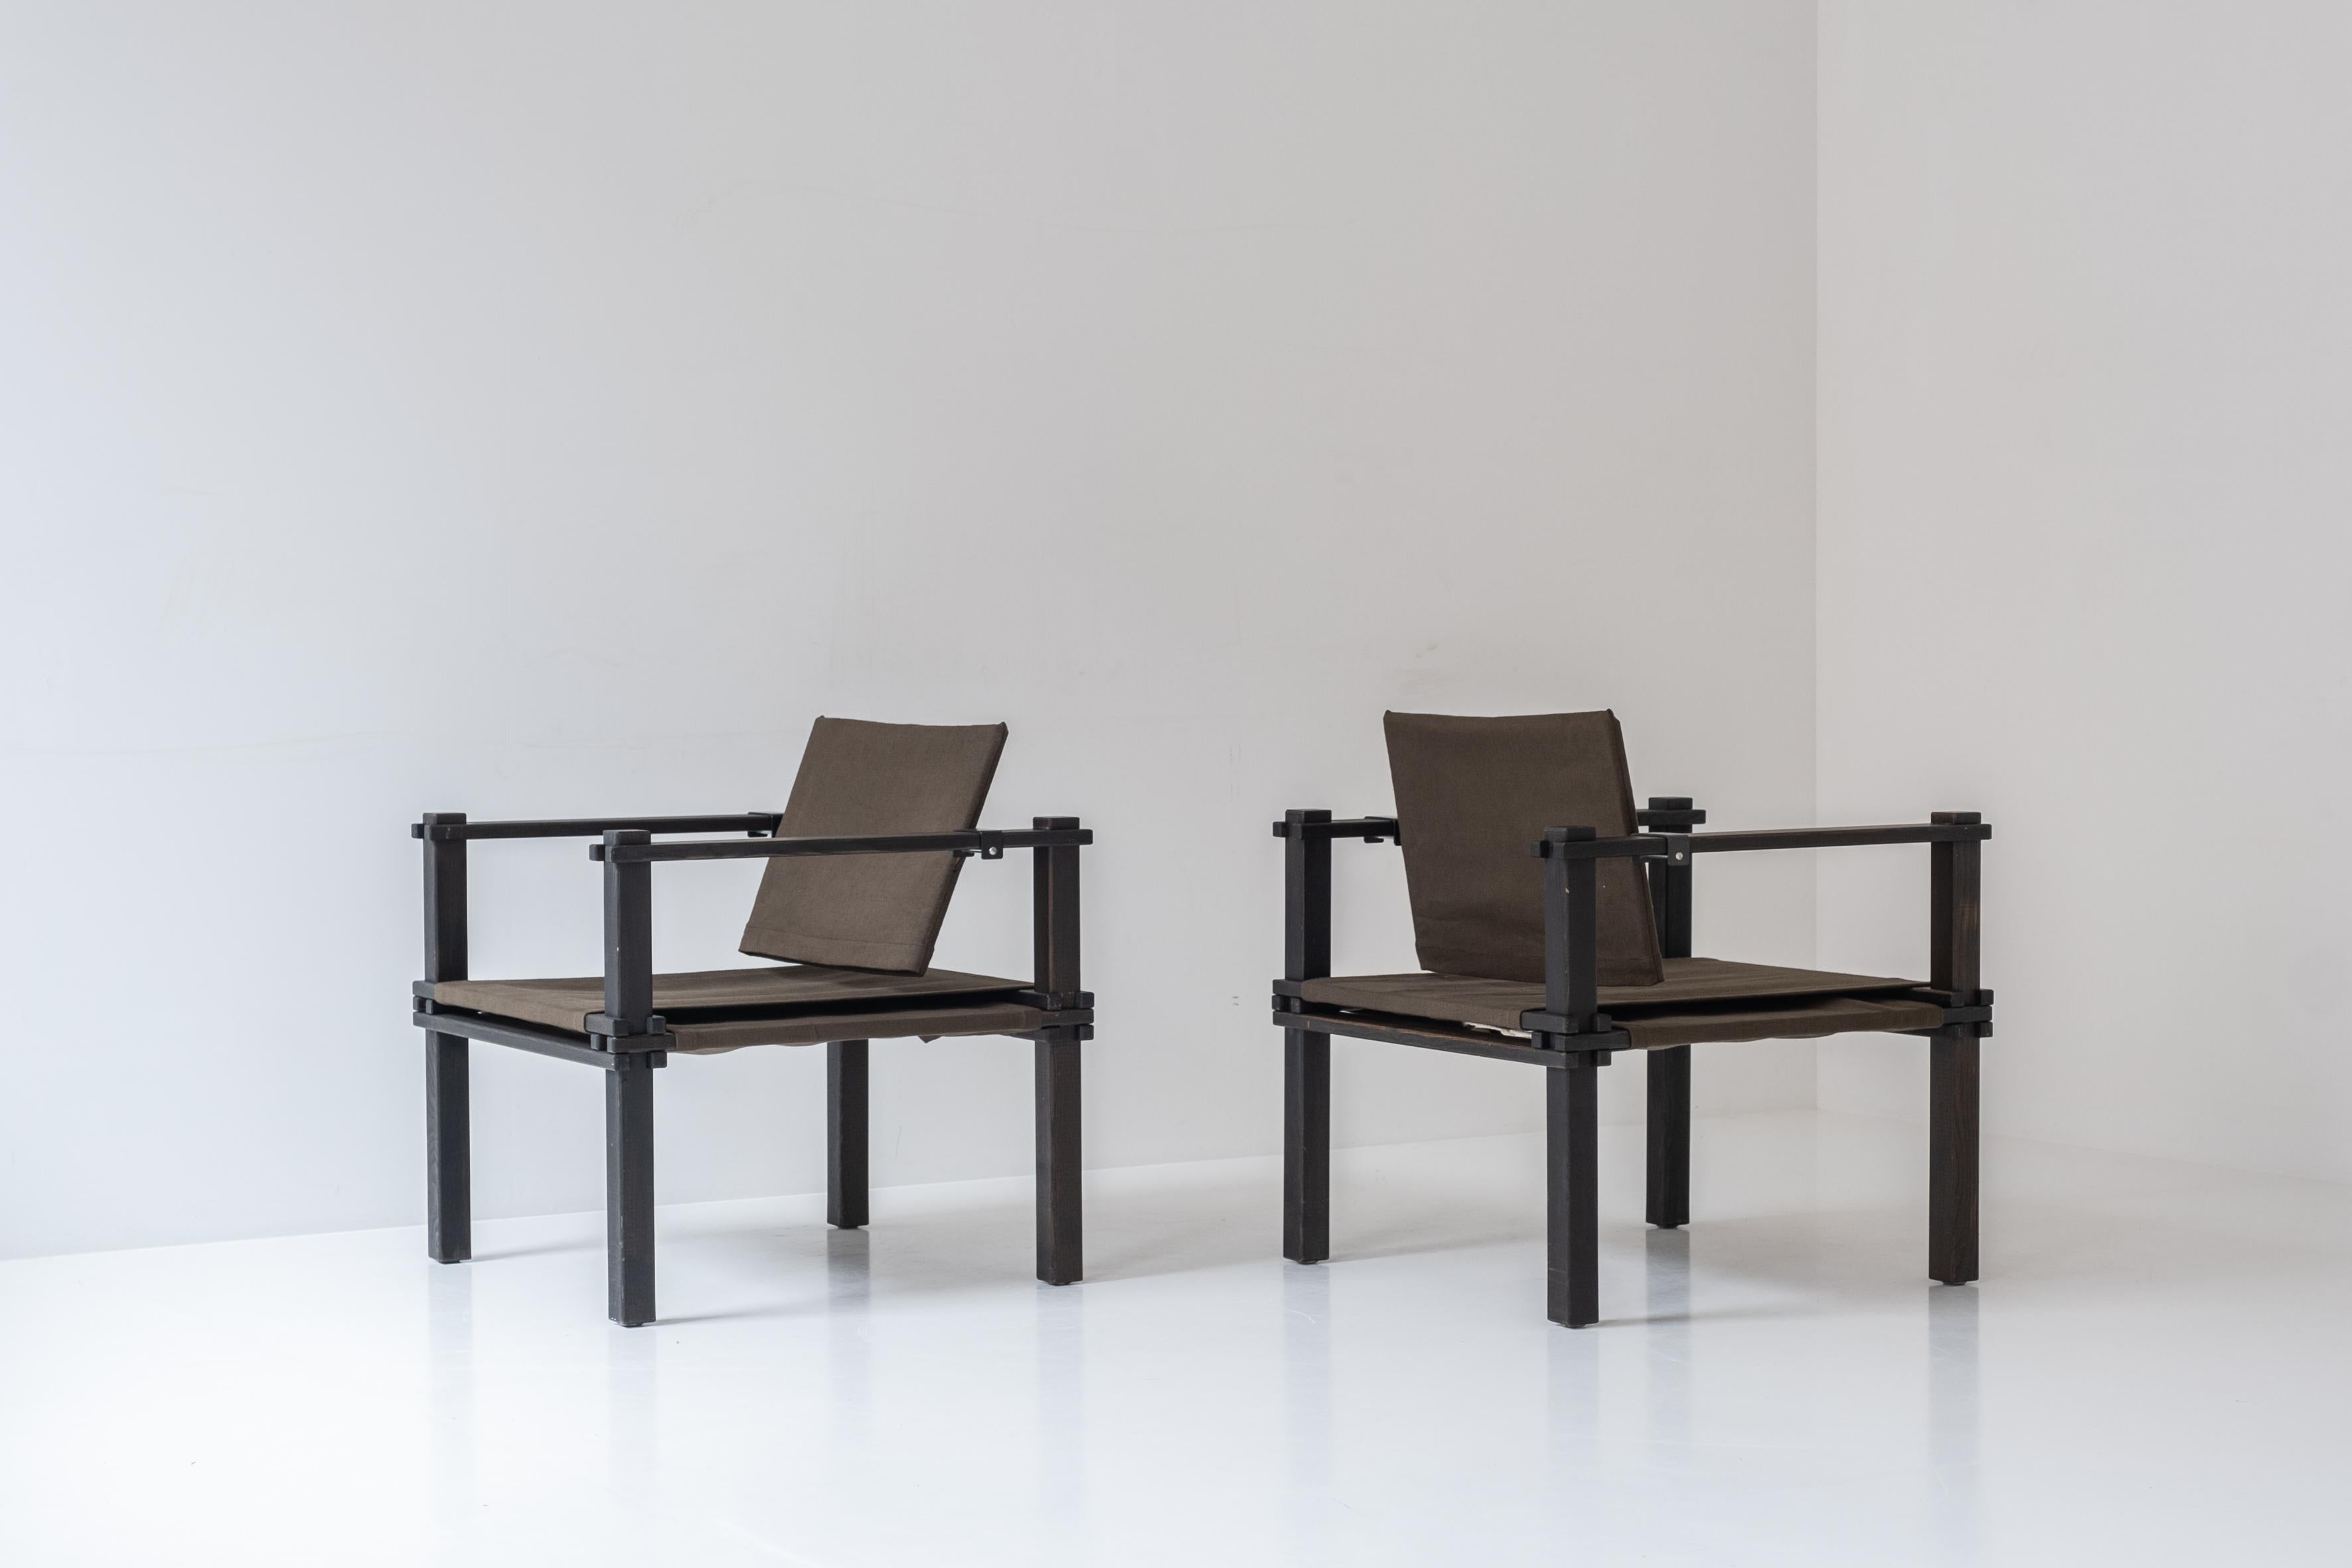 Ensemble de deux fauteuils Safari de Gerd Lange pour Bofinger, Allemagne, années 1960. Ces chaises sont dotées d'une structure en chêne teinté et d'une assise et d'un dossier en tissu. Ces chaises architecturales sont constituées uniquement